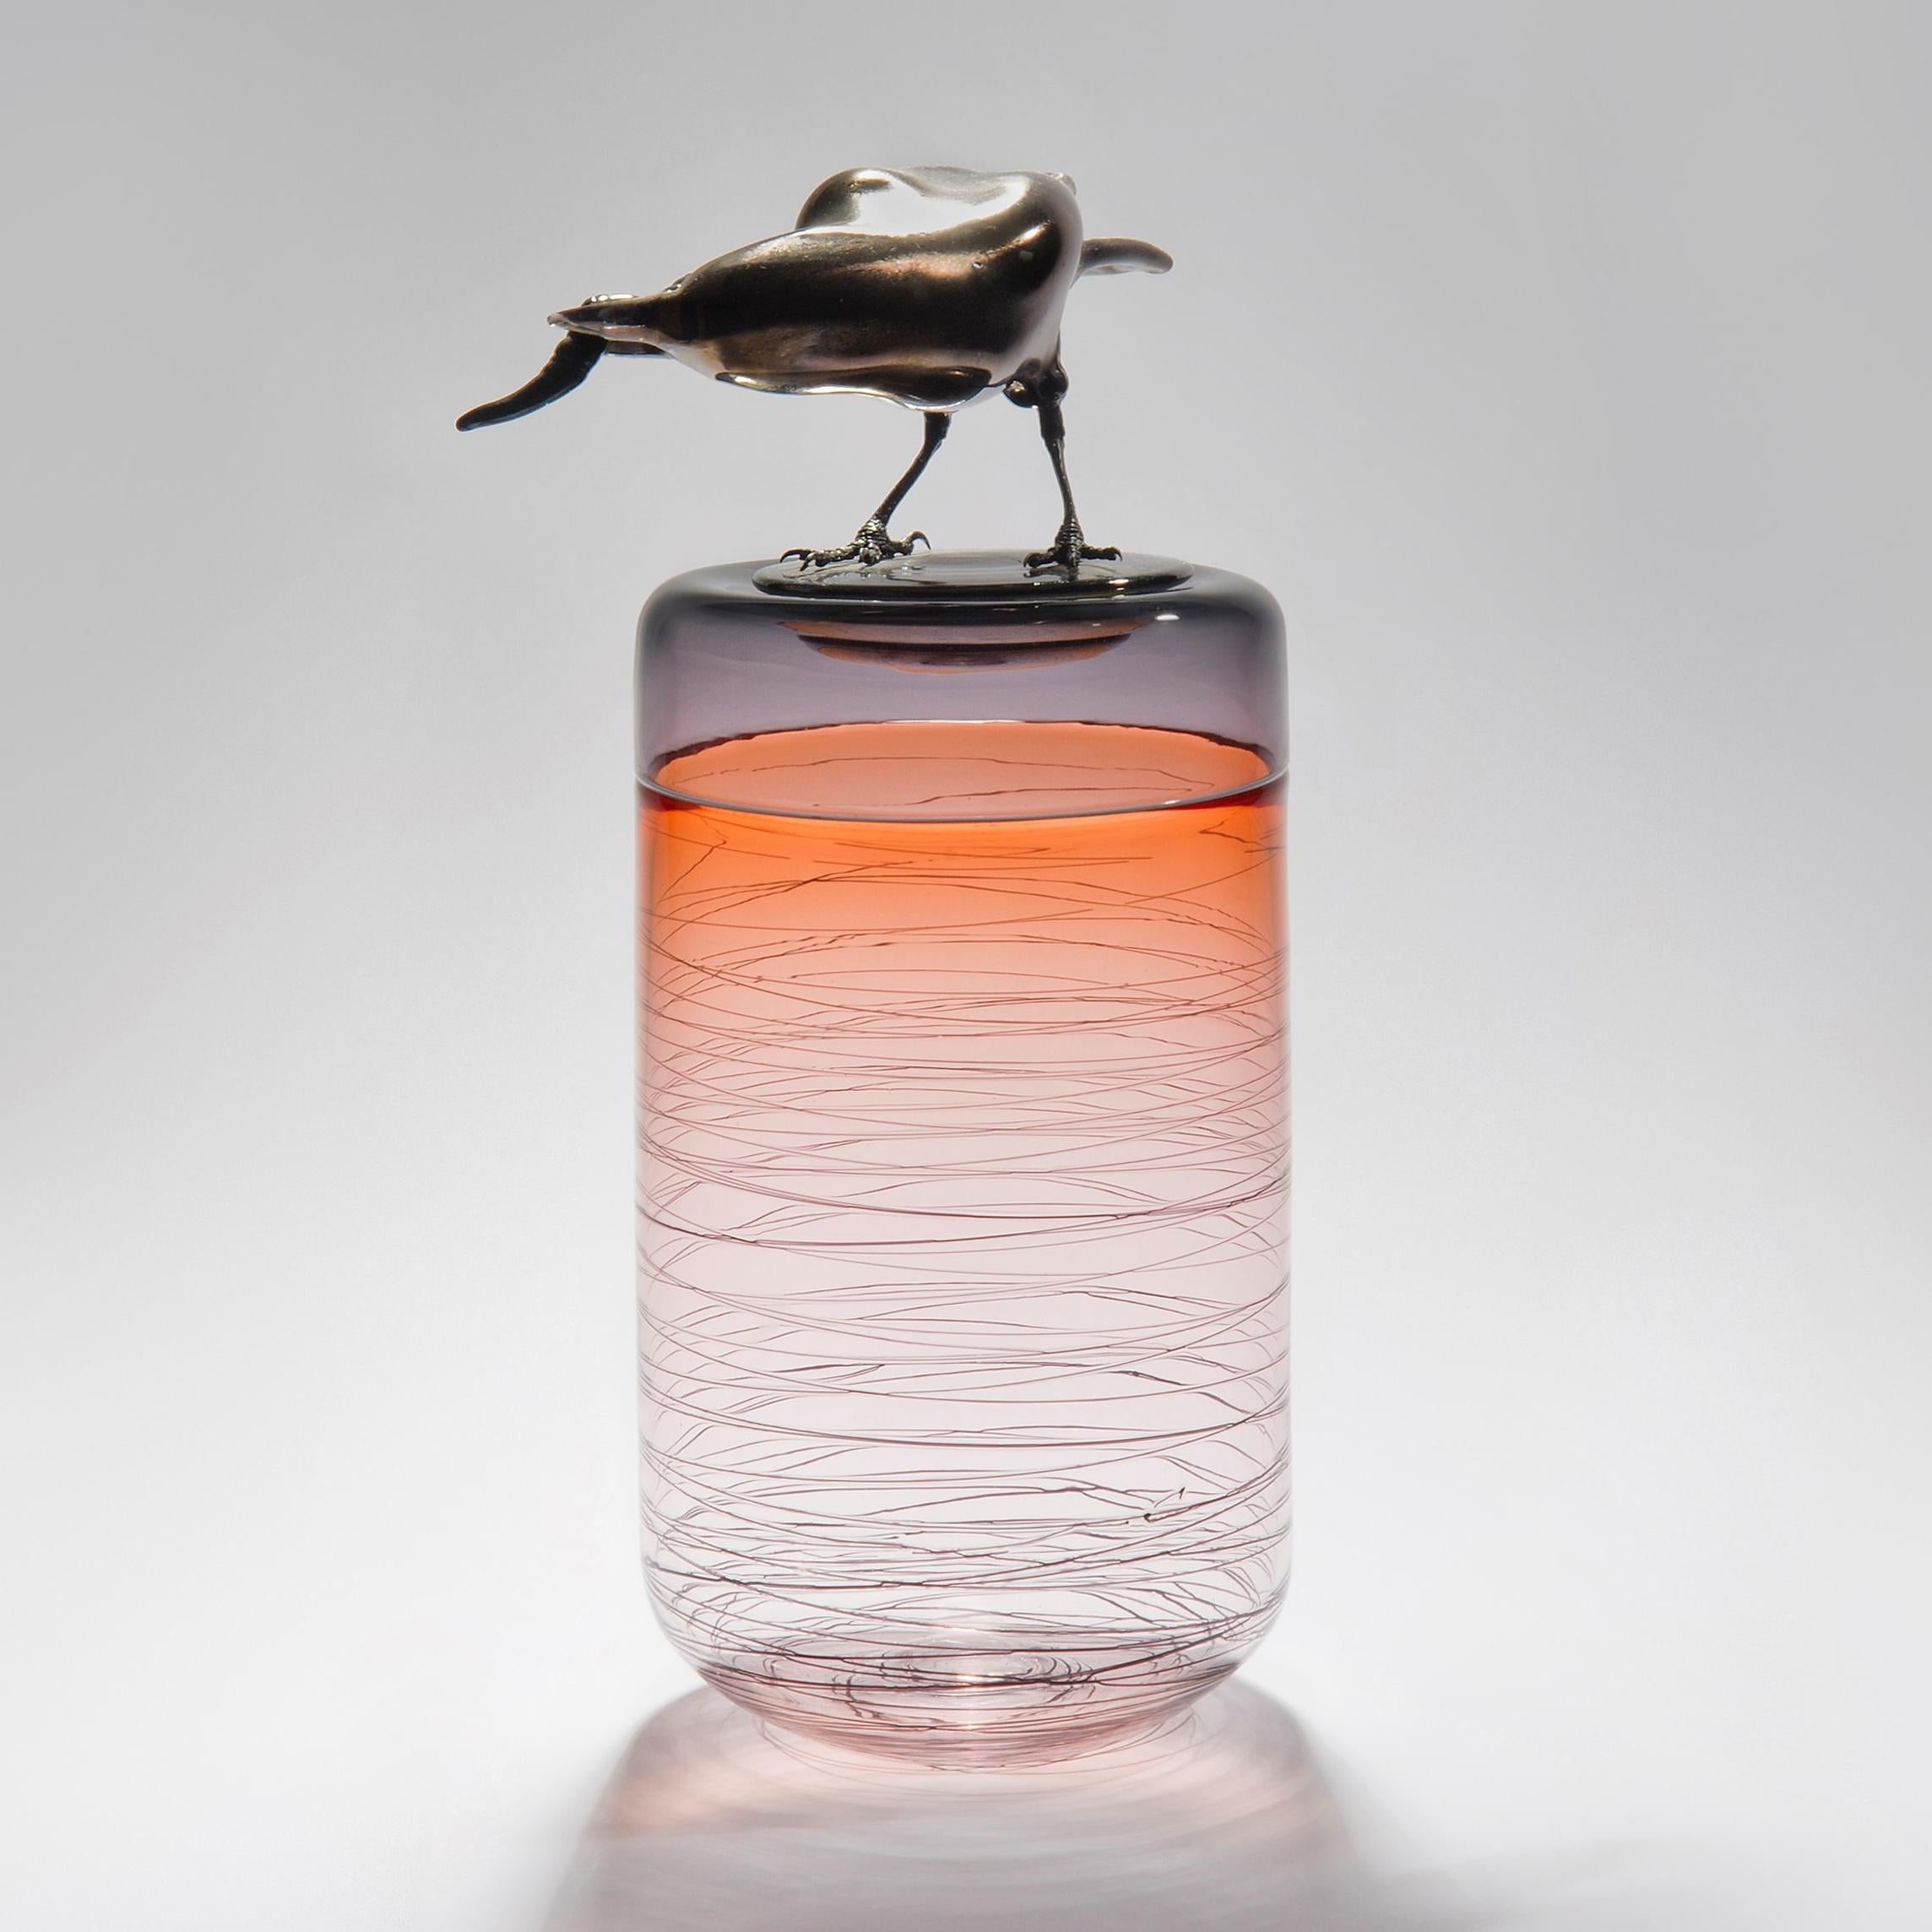 Gourmande, est un vase en verre d'art soufflé à la bouche en abricot avec un couvercle amovible orné d'un corbeau en verre noir sculpté à chaud tenant un ver de l'artiste britannique Julie Johnson. La figurine du corbeau peut également être retirée